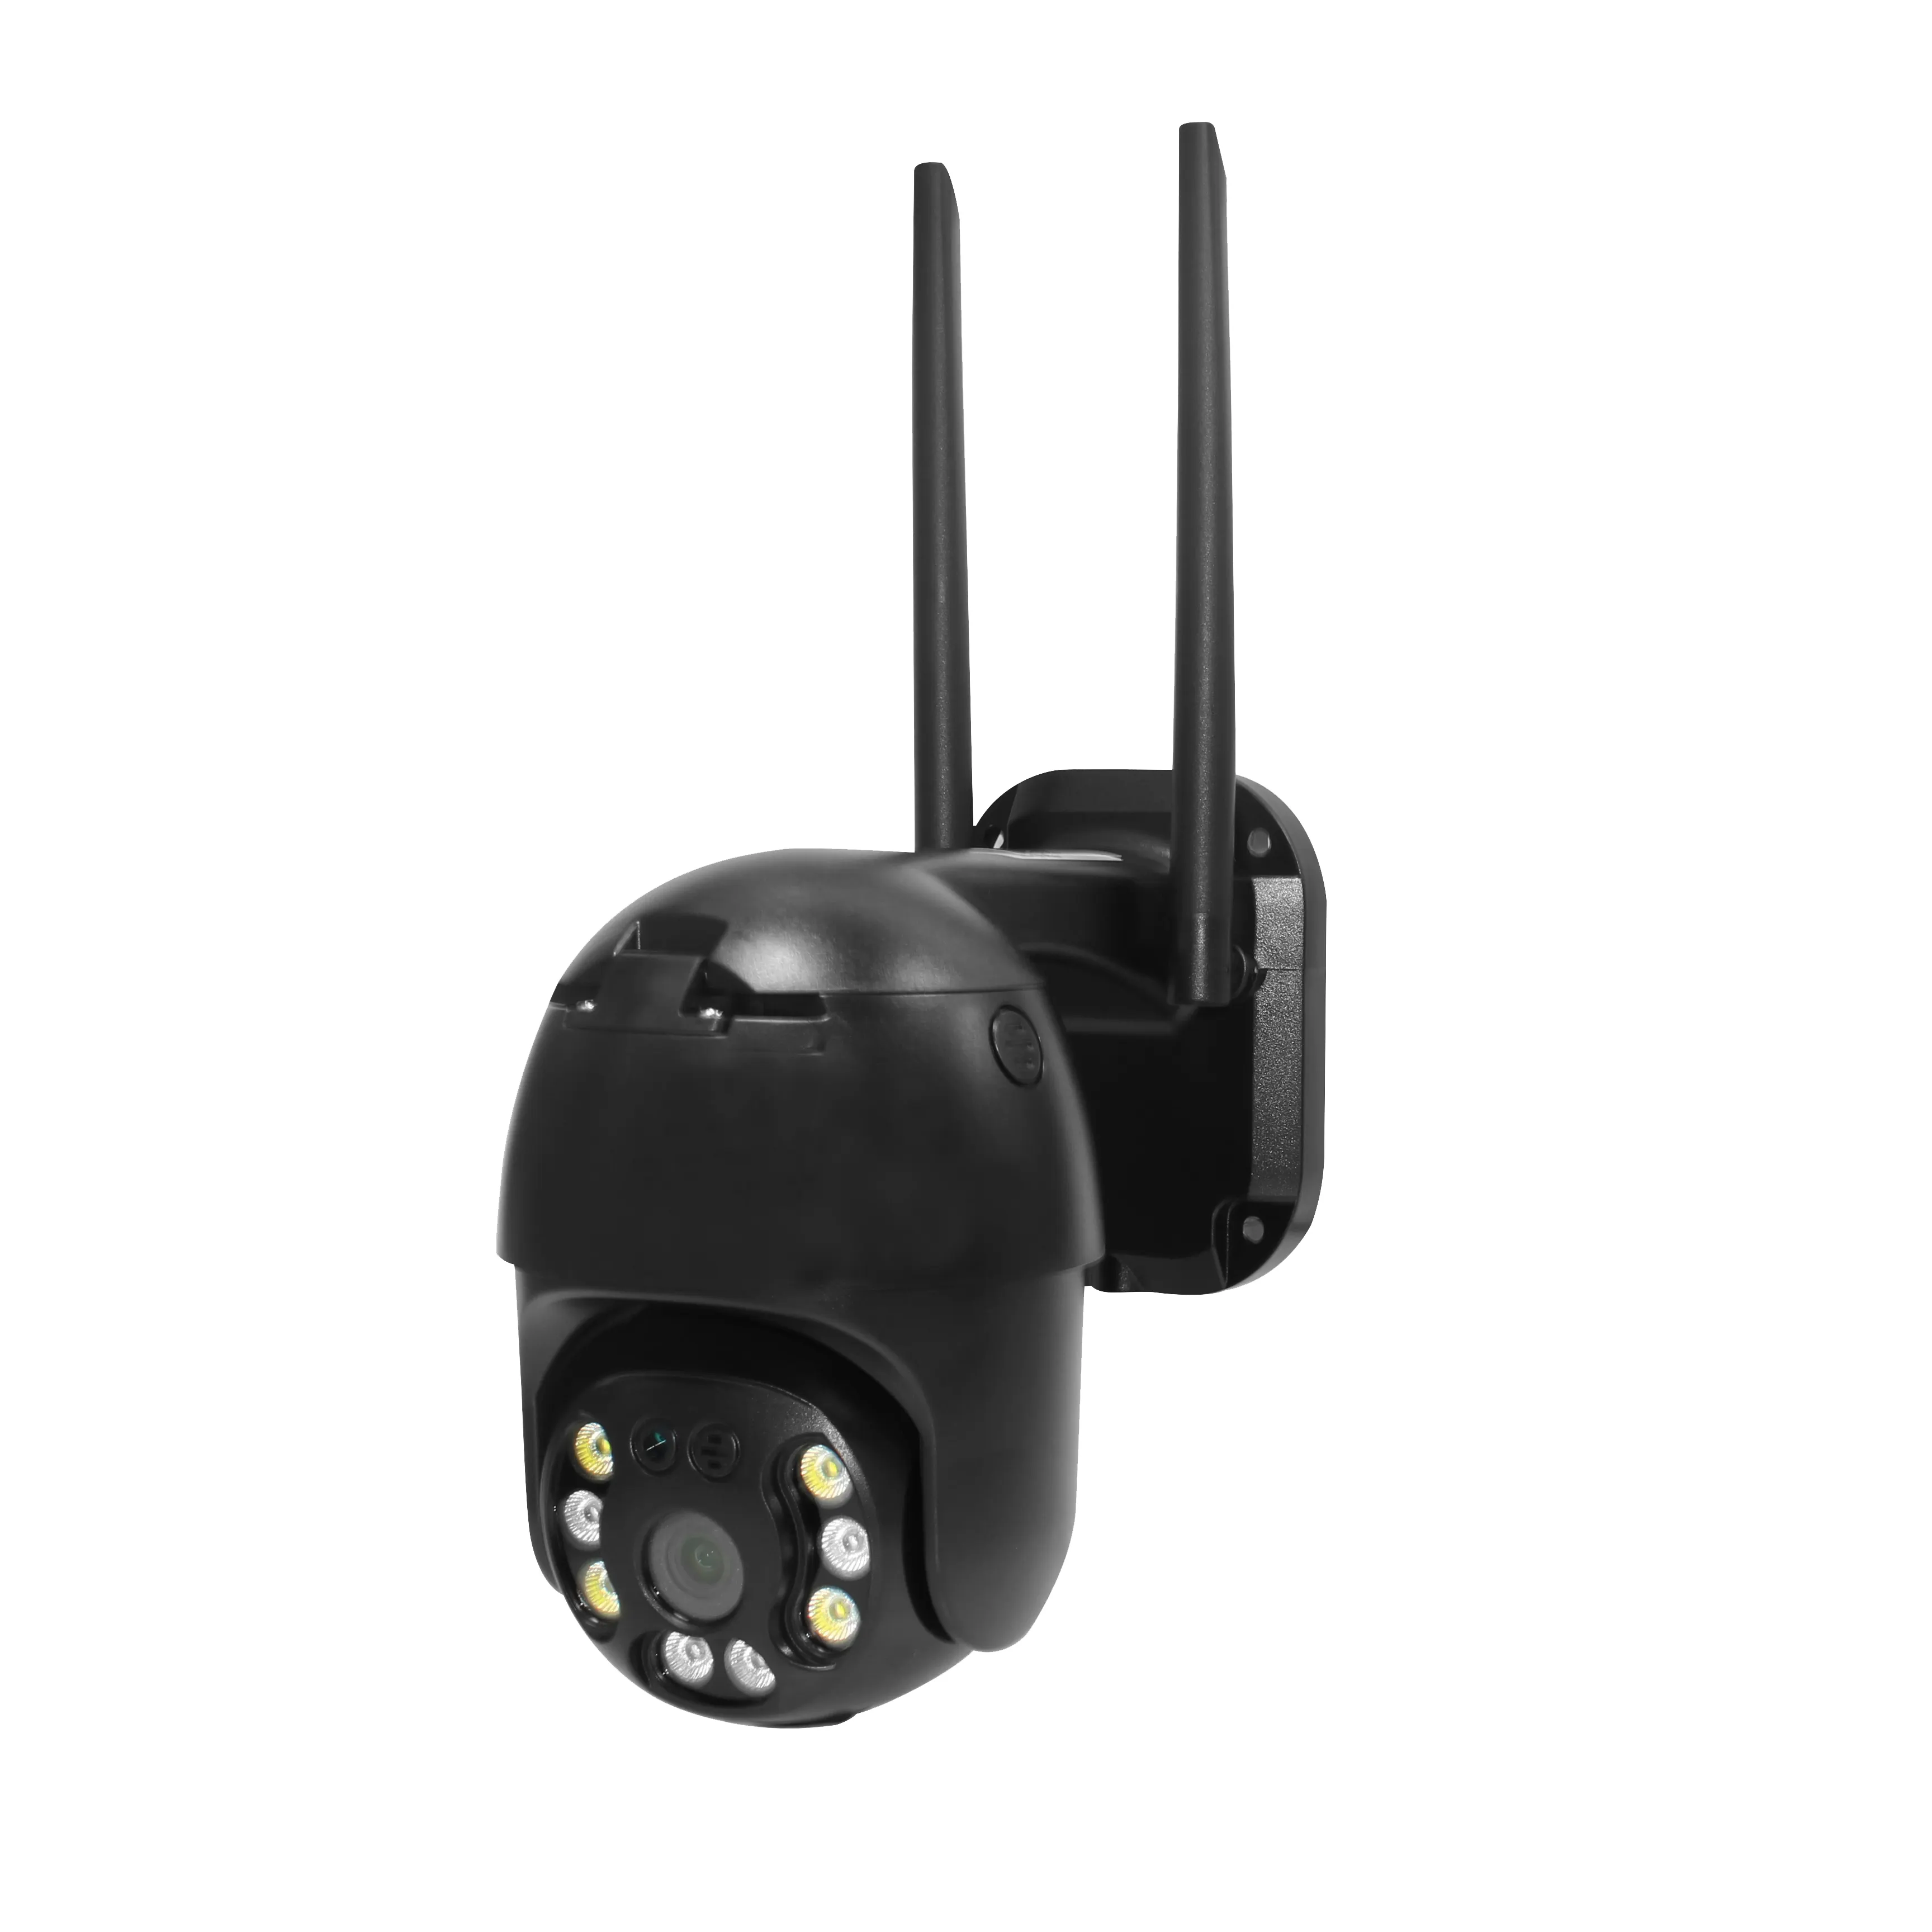 Vendita calda telecamera PTZ HD 2MP 1080P V380 telecamera wi-fi CCTV telecamera per visione notturna a colori Audio bidirezionale